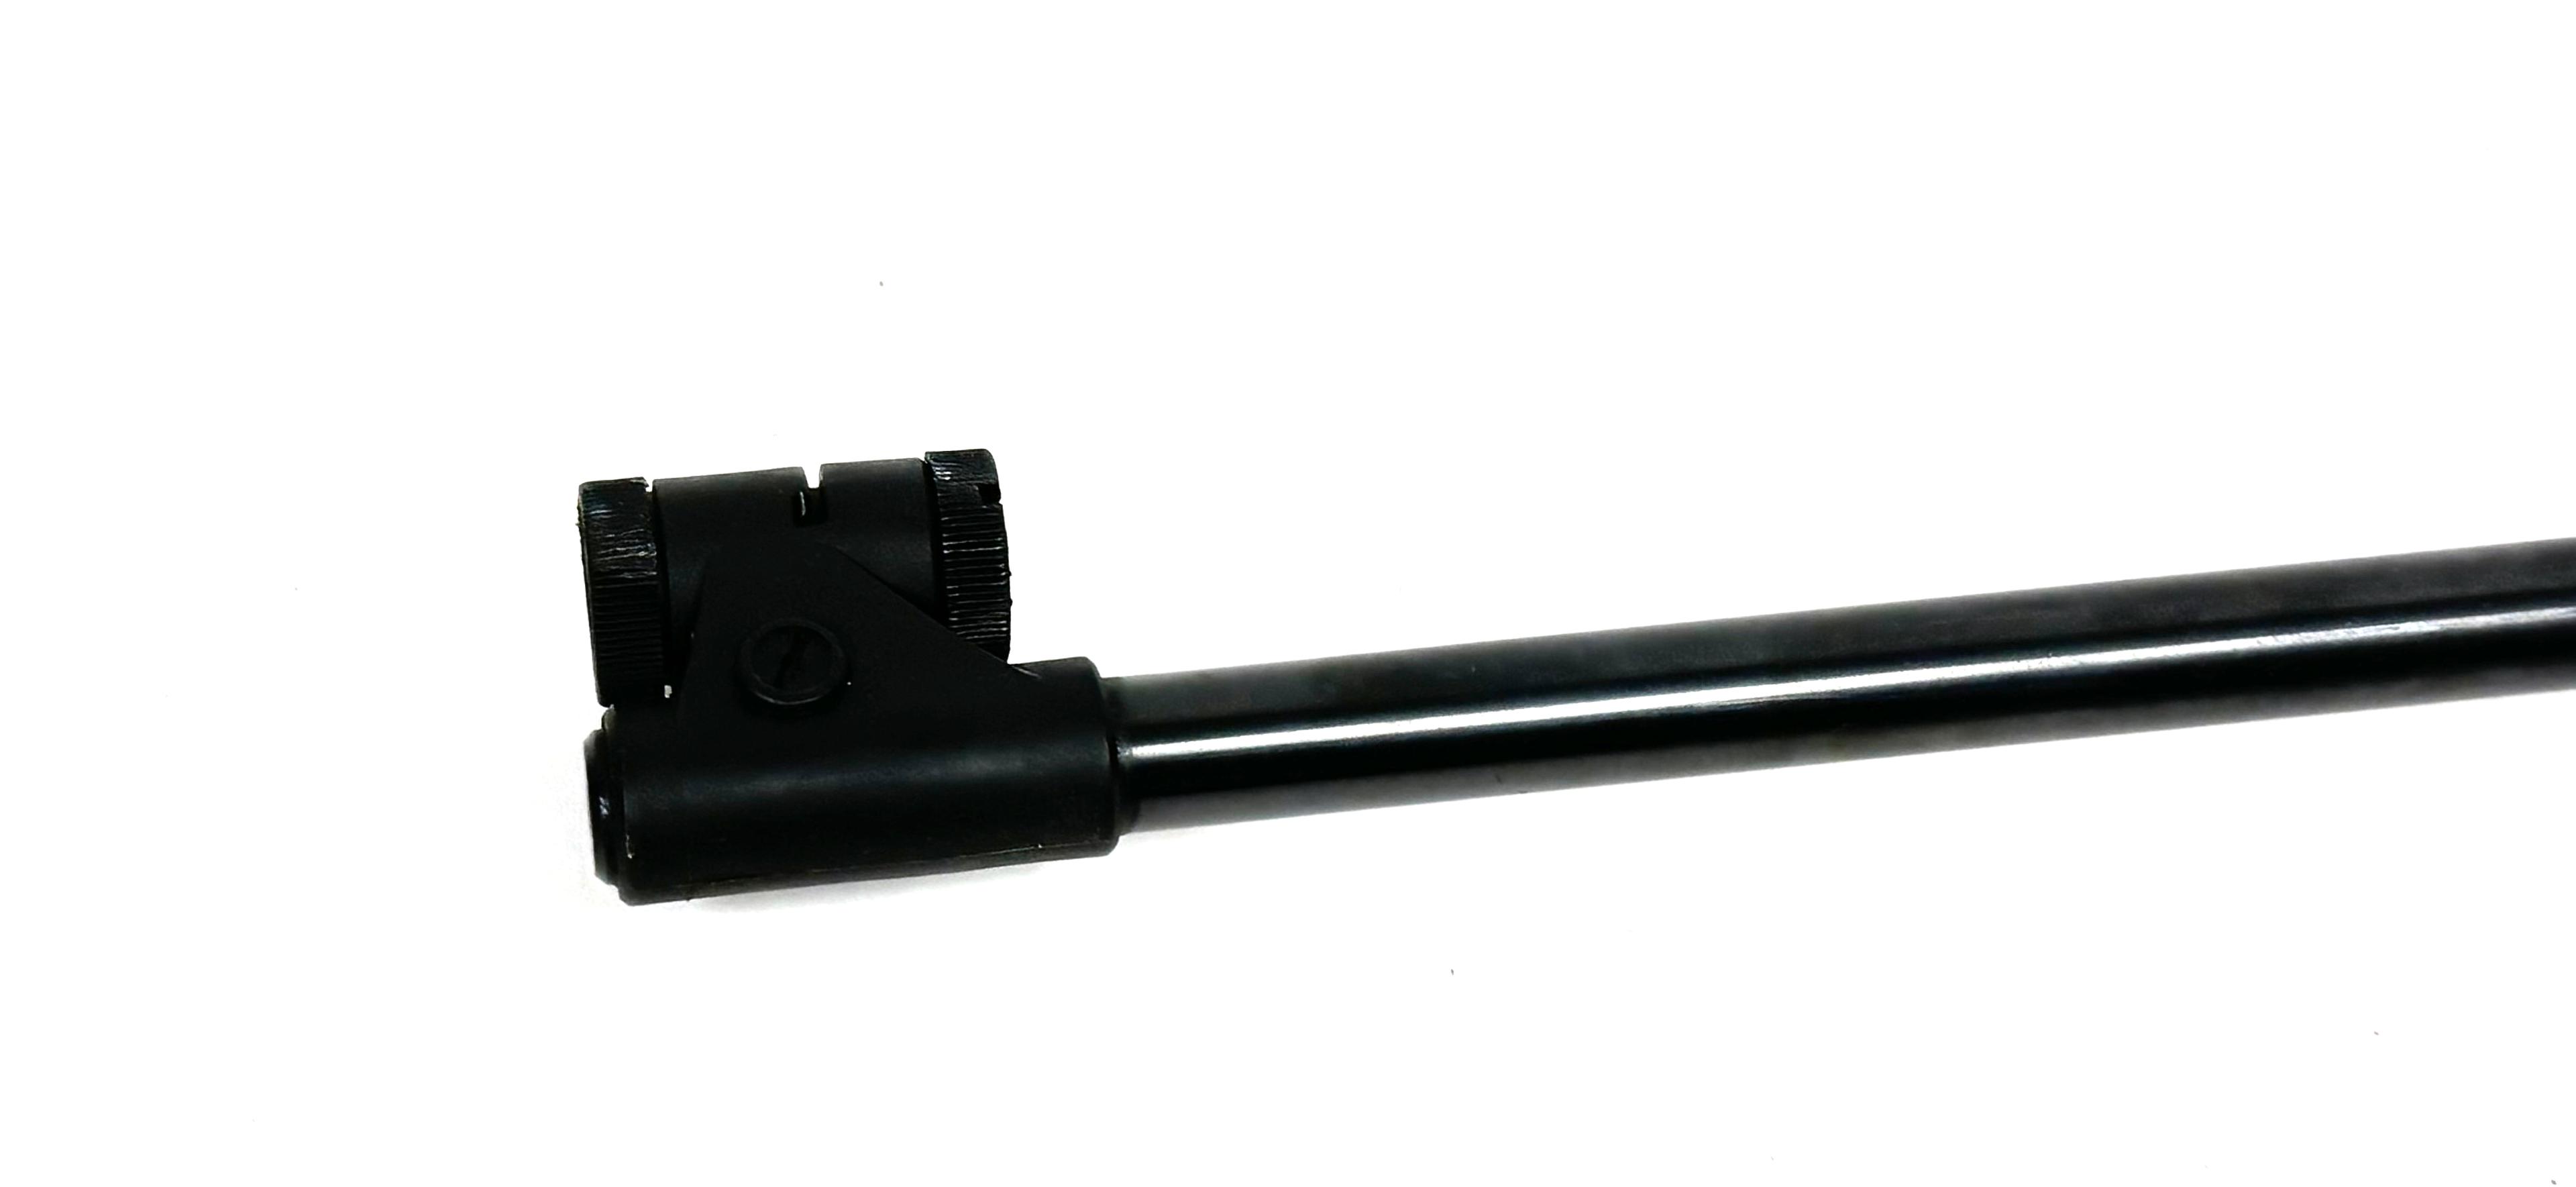 Marksman 0035 .177 CAL. Break Barrel Air Rifle Made in Spain 